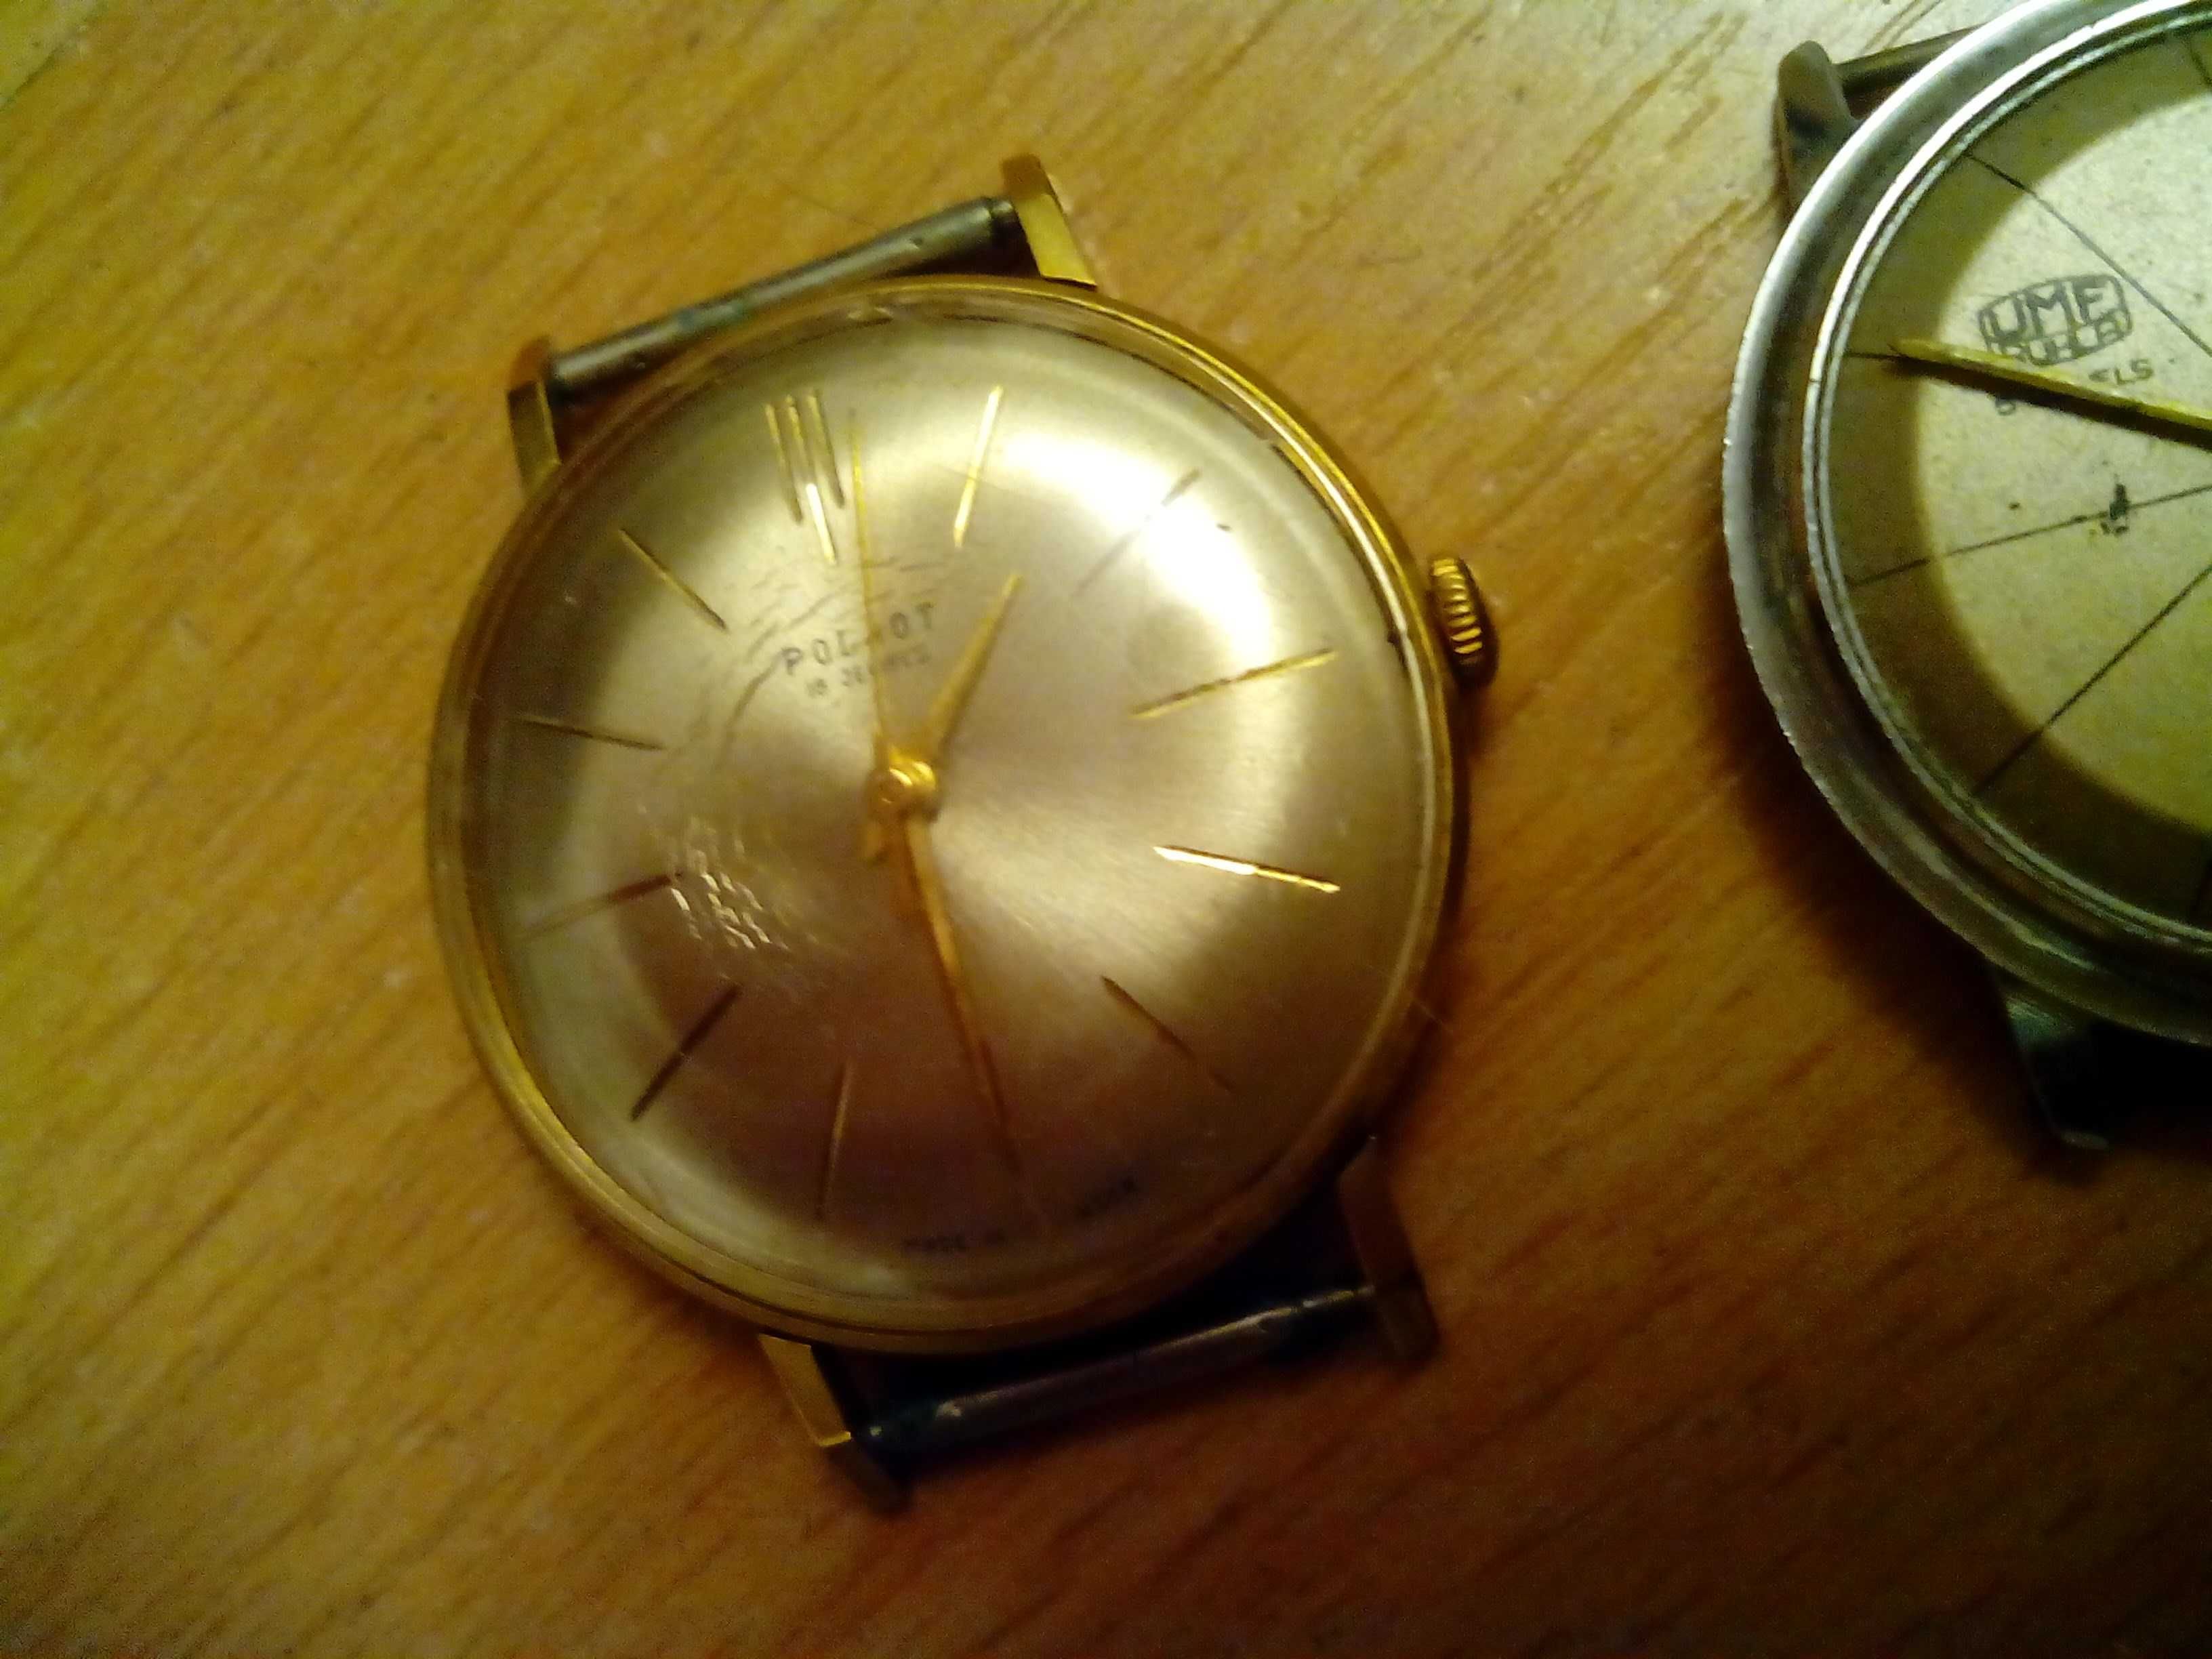 Zegarek Poljot USSR, CCCP, oraz zegarek UMF niemiecki, PRL